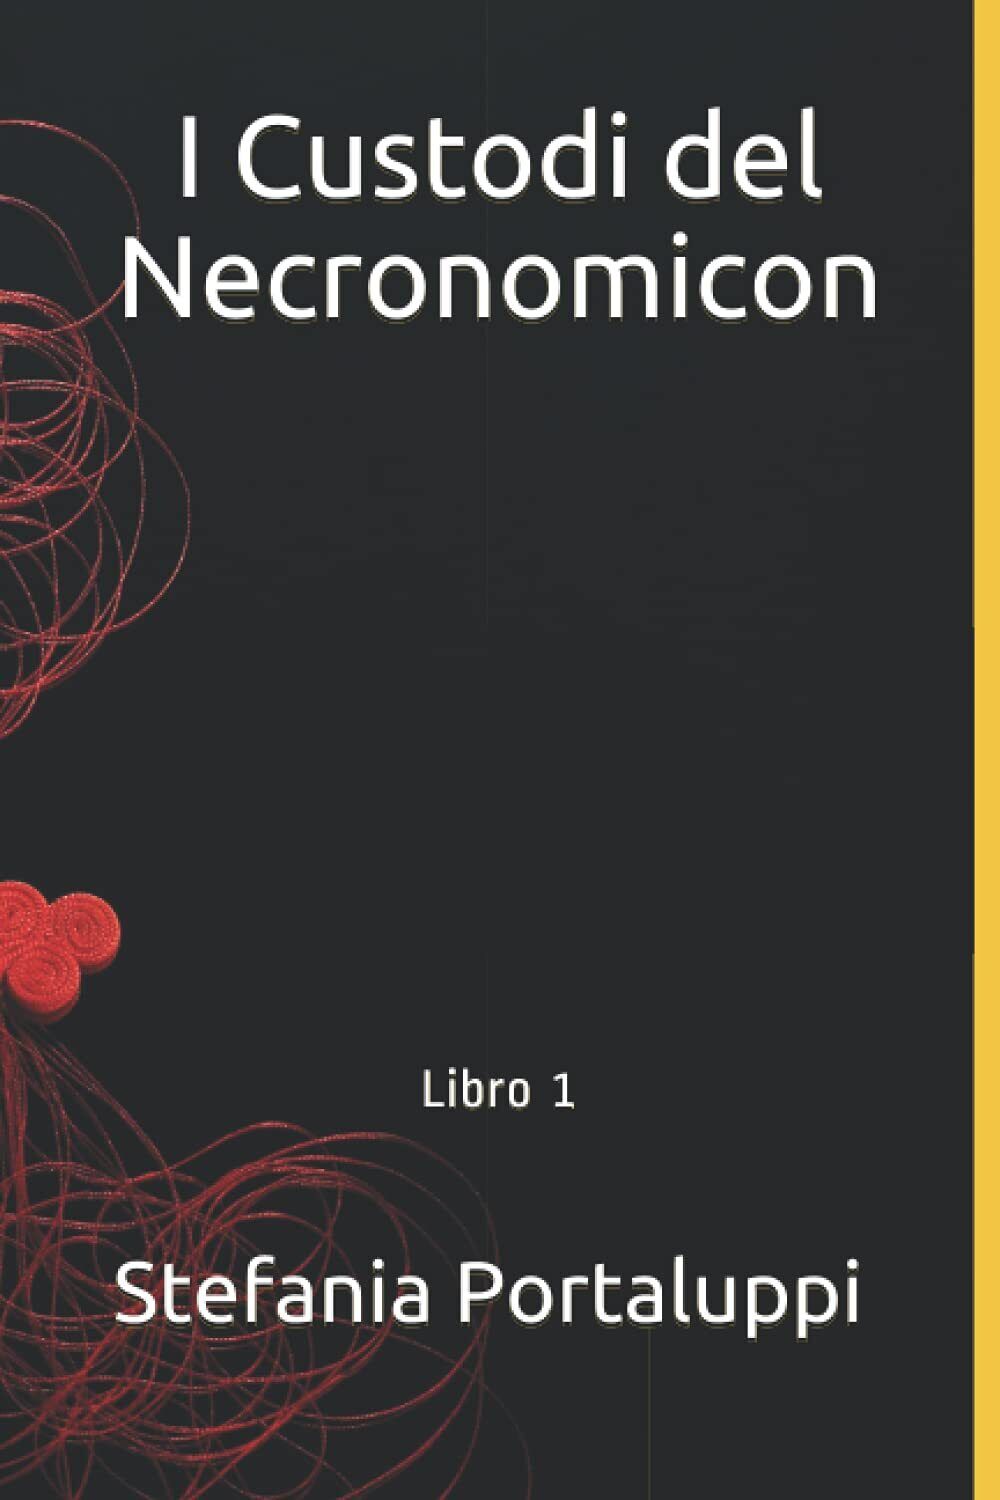 I Custodi del Necronomicon: Libro 1 - Stefania Portaluppi - ?Independently,2021 